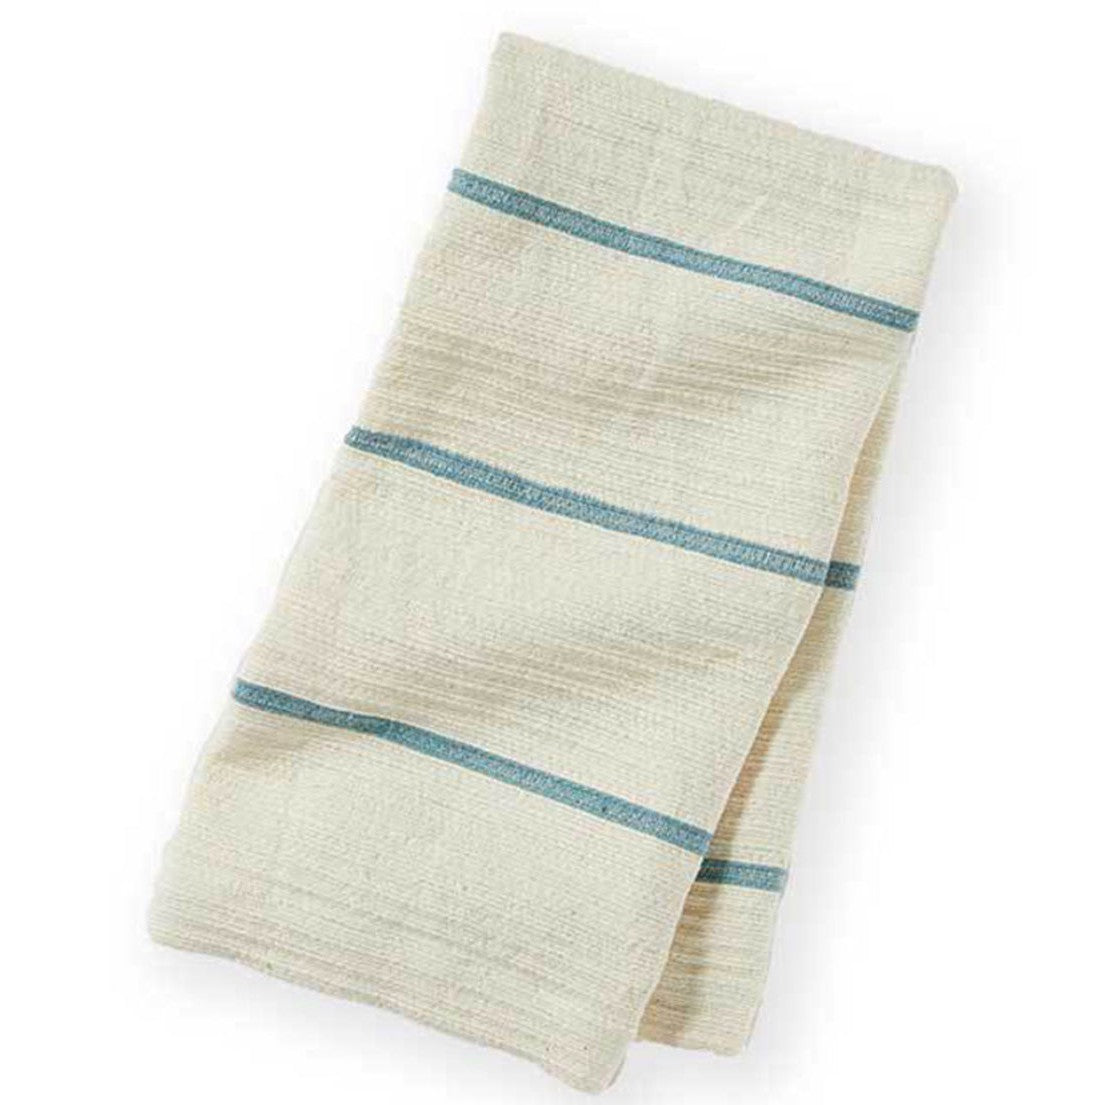 Amhara Hand Towel - Aqua